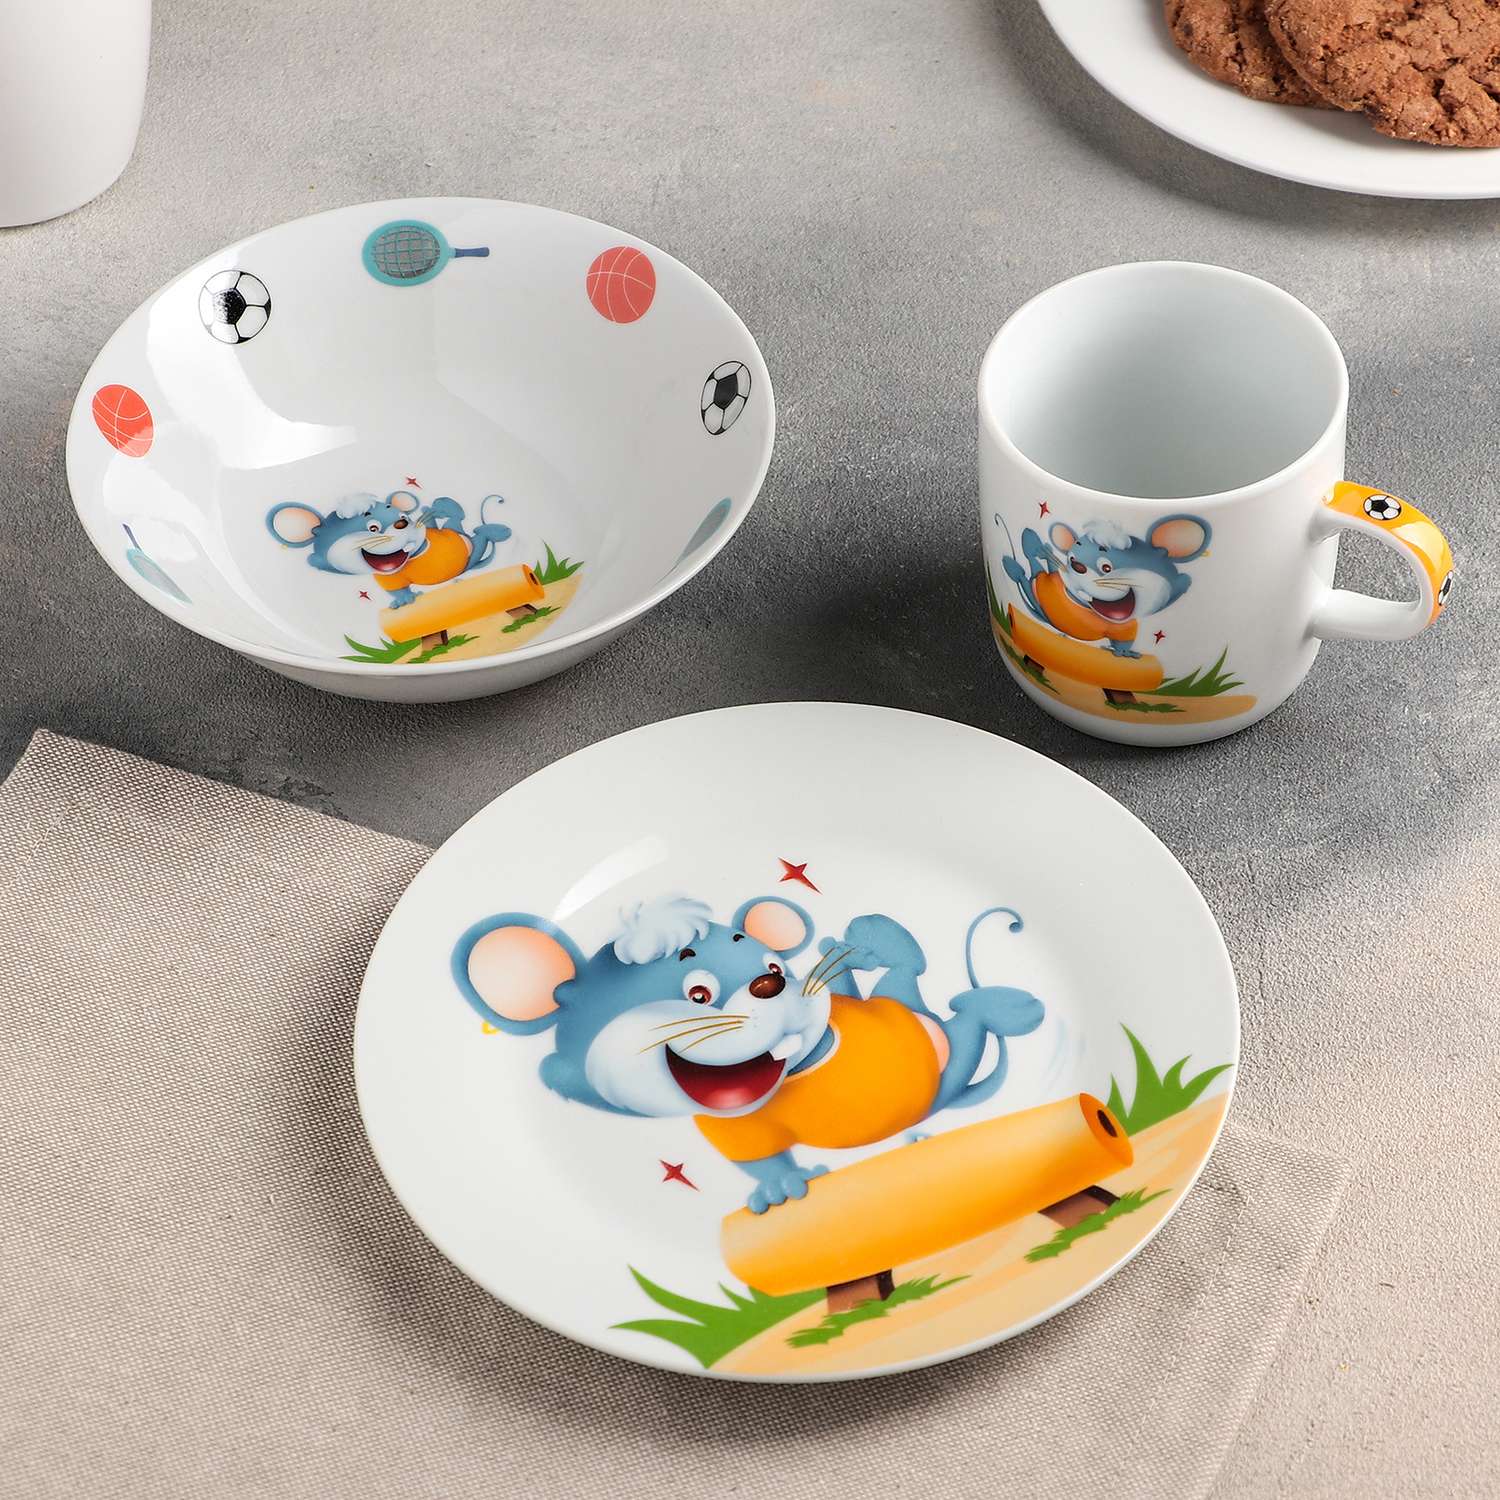 Тарелка набор детский. Посуда для малышей. Детский набор посуды. Красивая детская посуда. Набор детской керамической посуды.